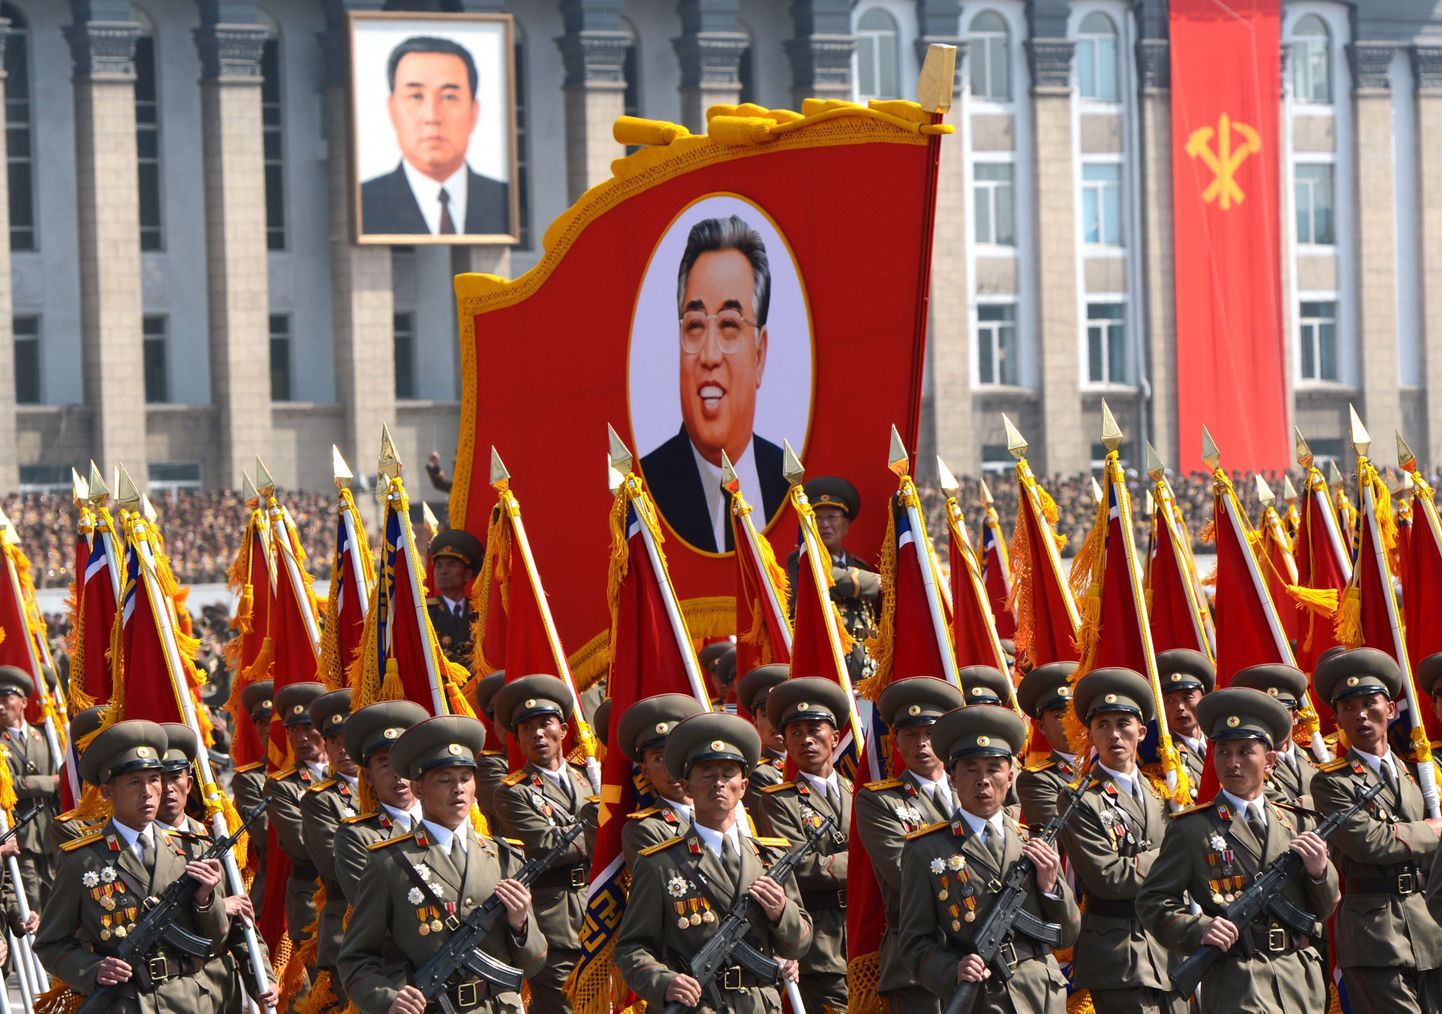 Põhjakorealased ja endiste juhtide pildid